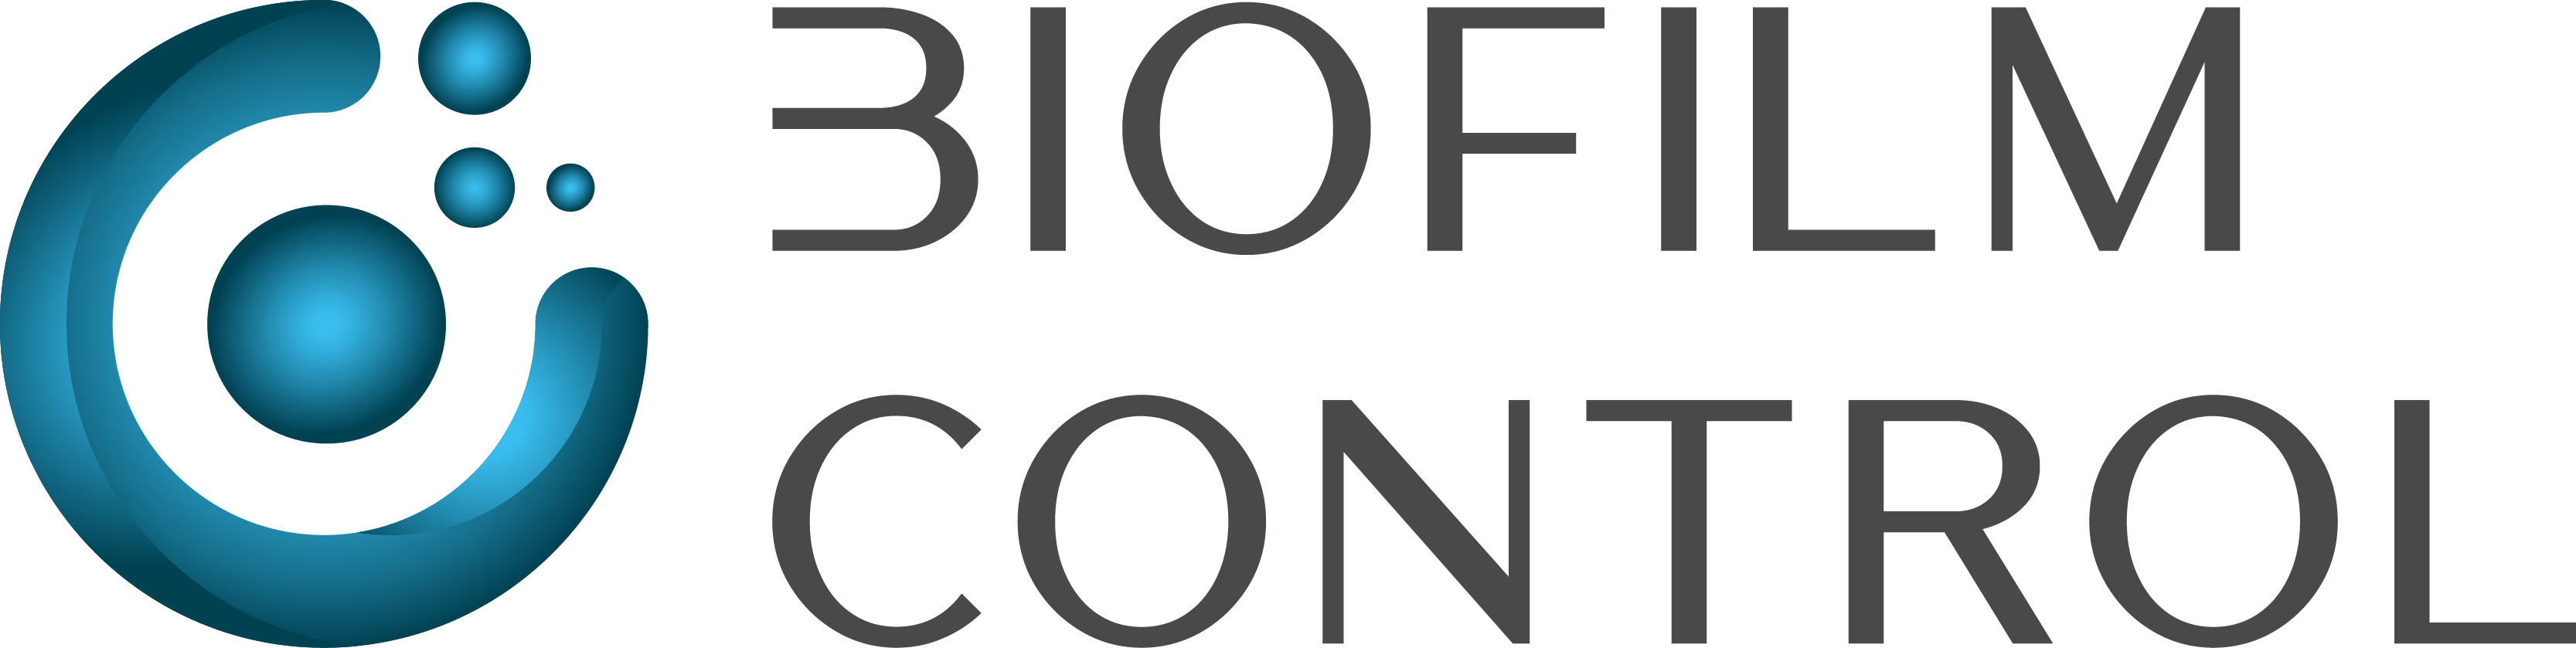 Biofilm control